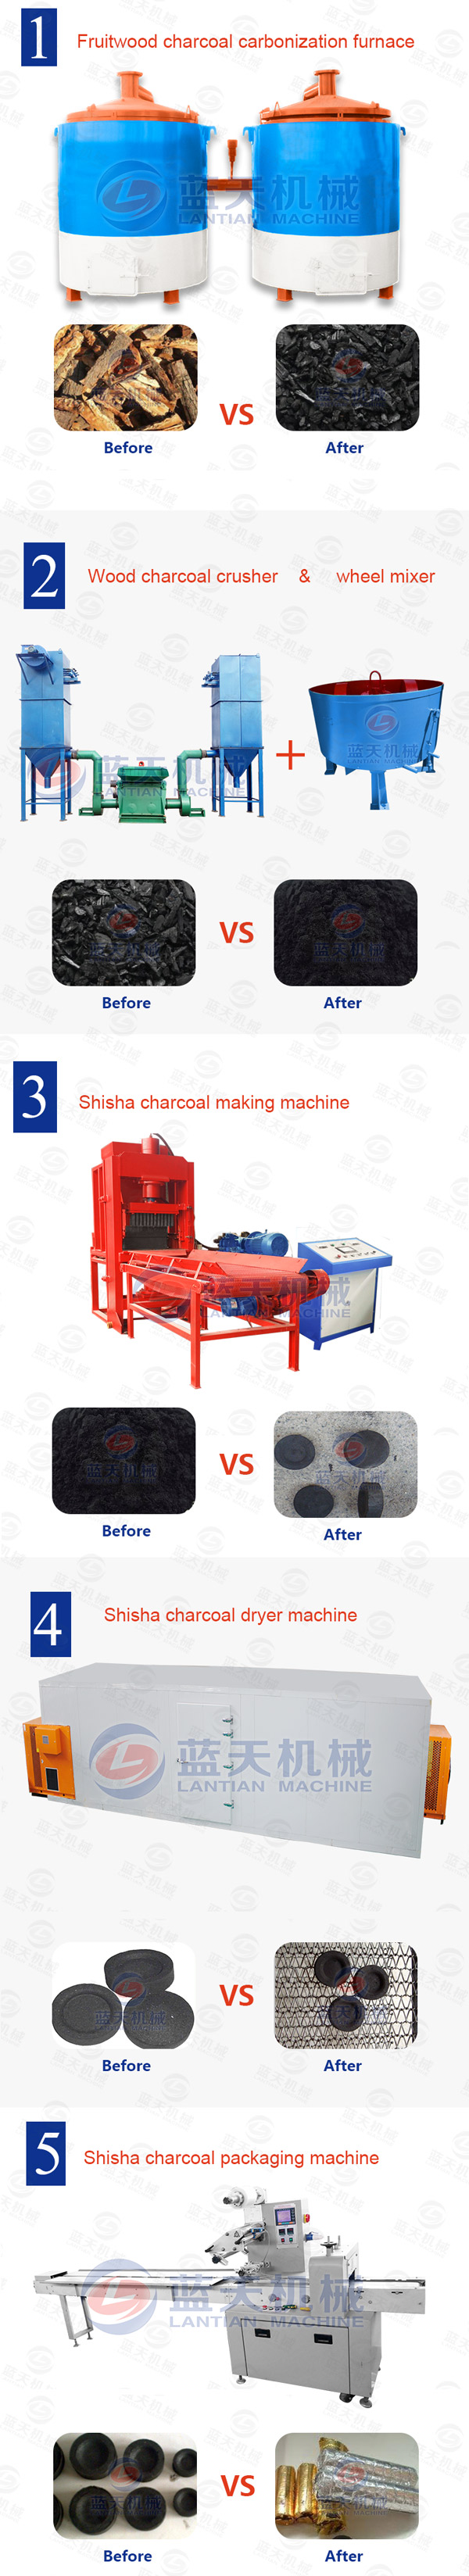 shisha charcoal making machine supplier